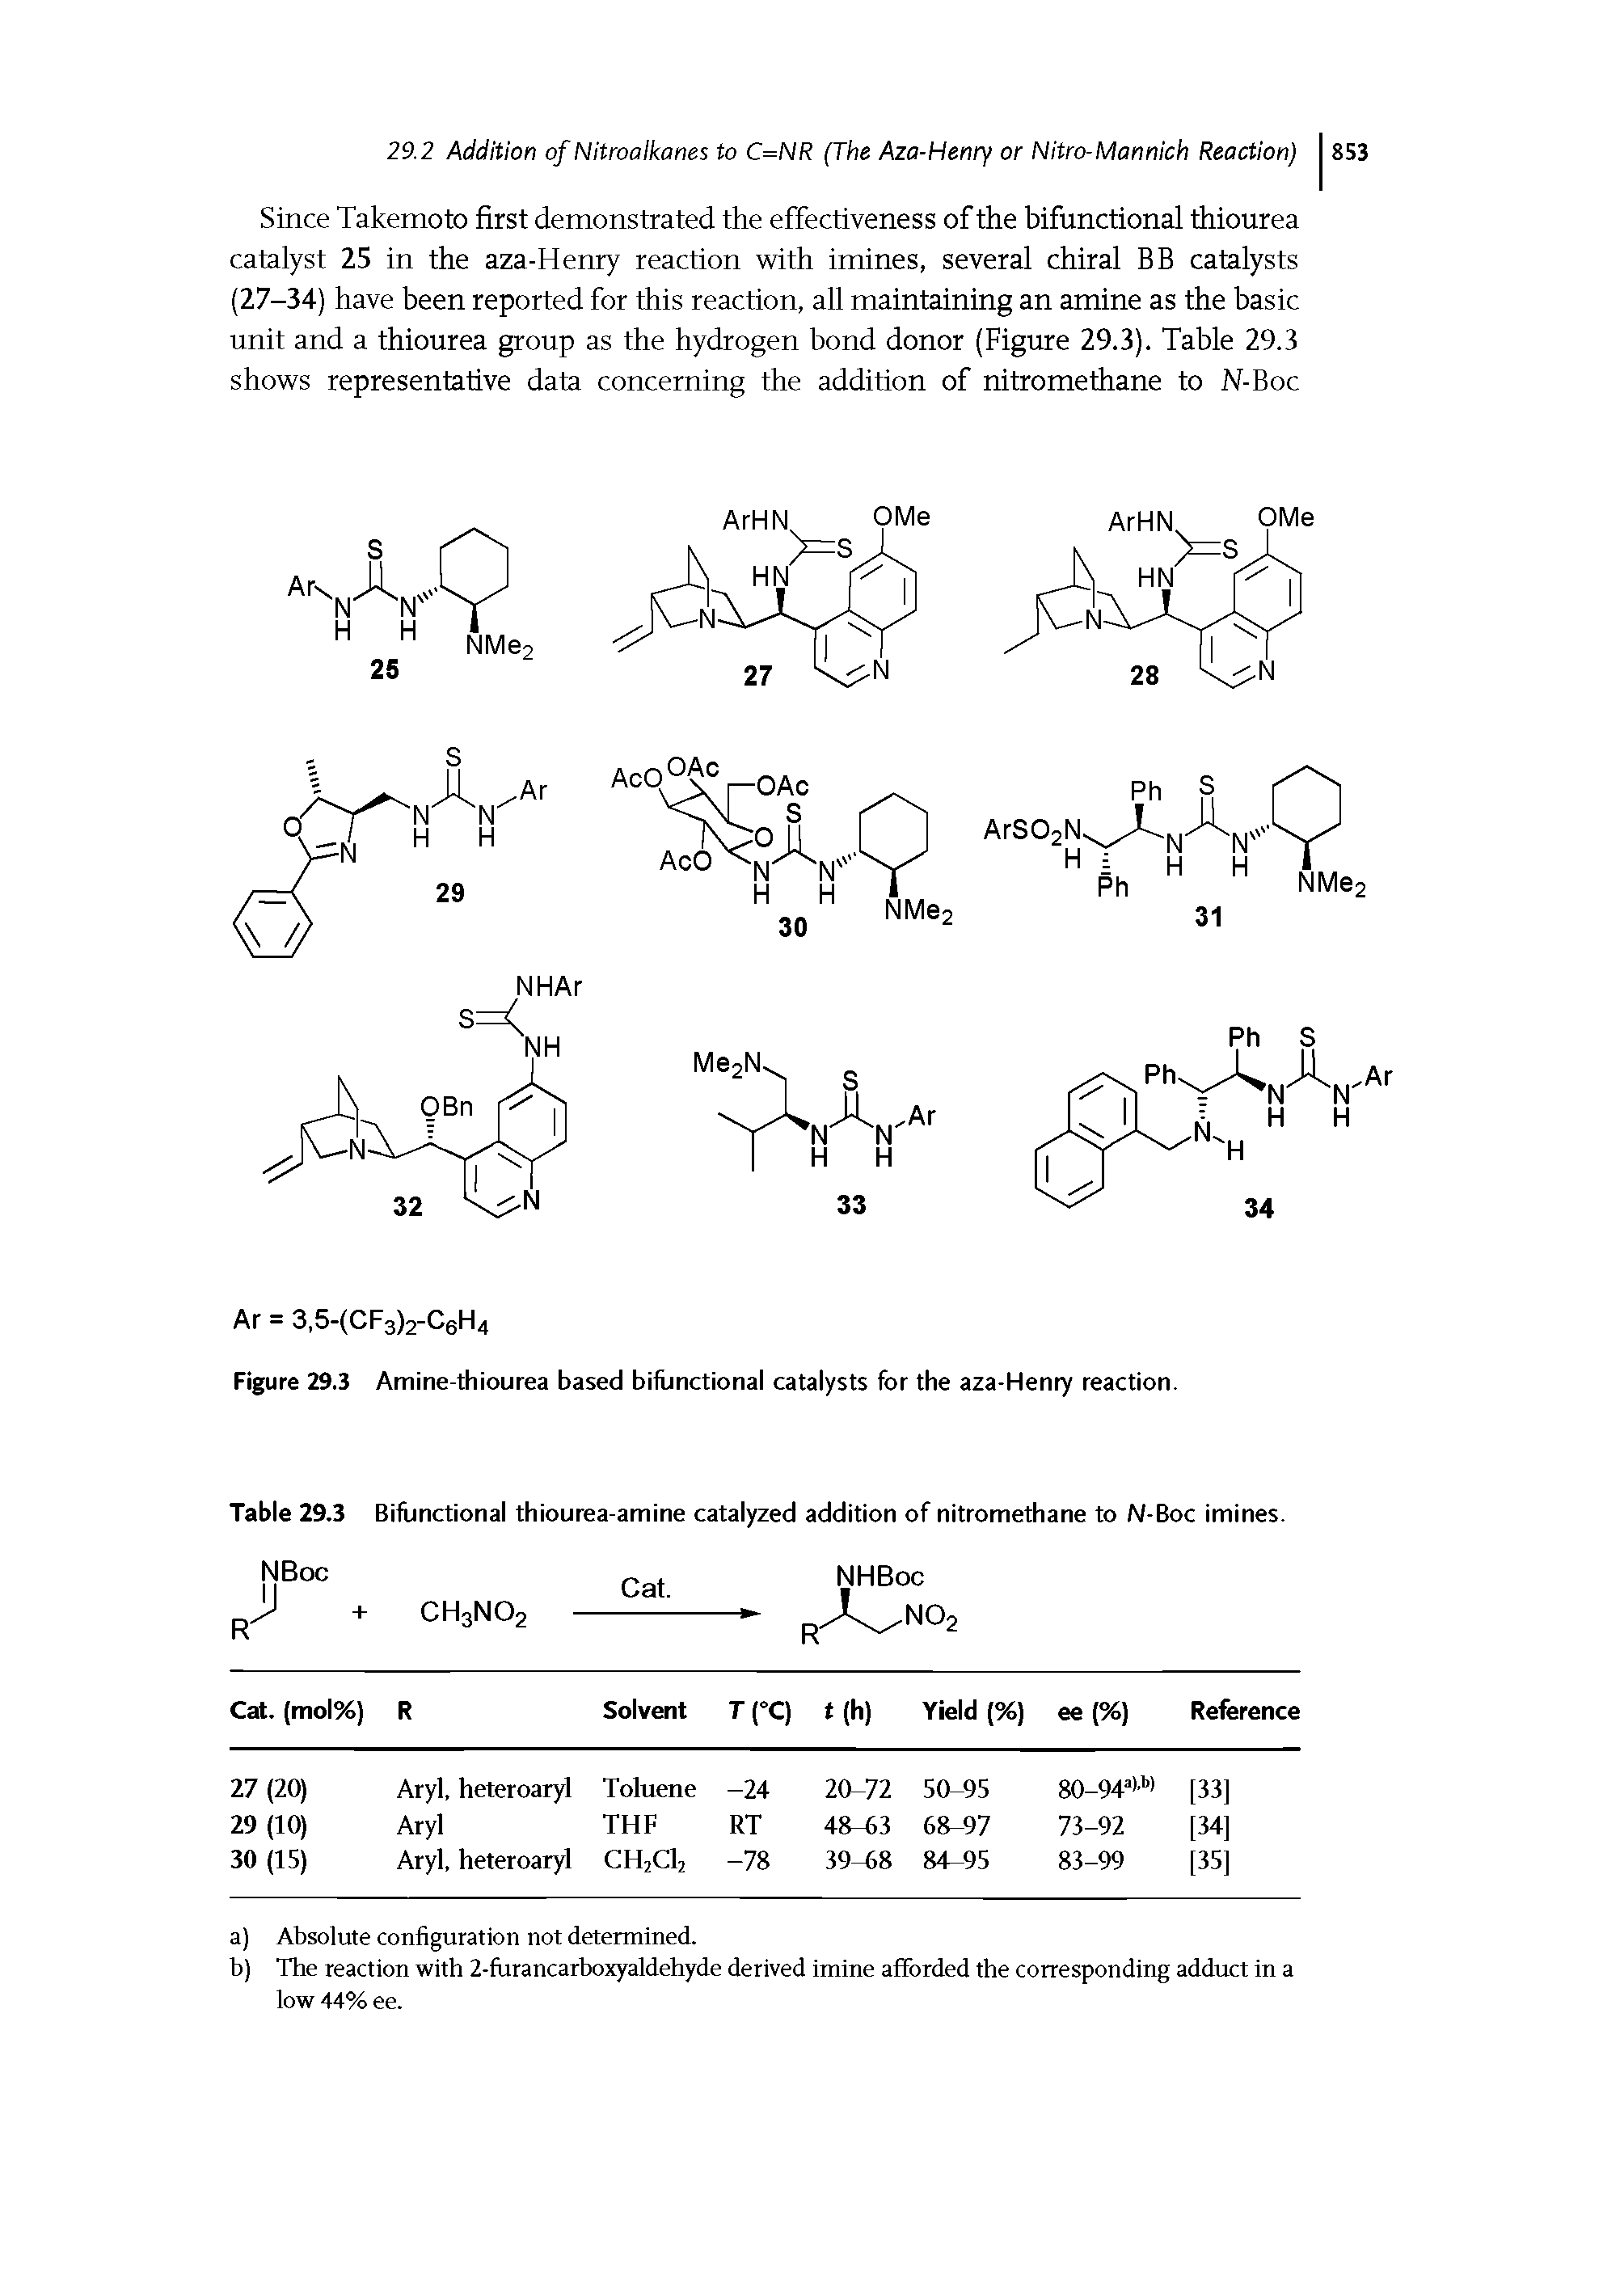 Table 29.3 Bifunctional thiourea-amine catalyzed addition of nitromethane to N-Boc imines.